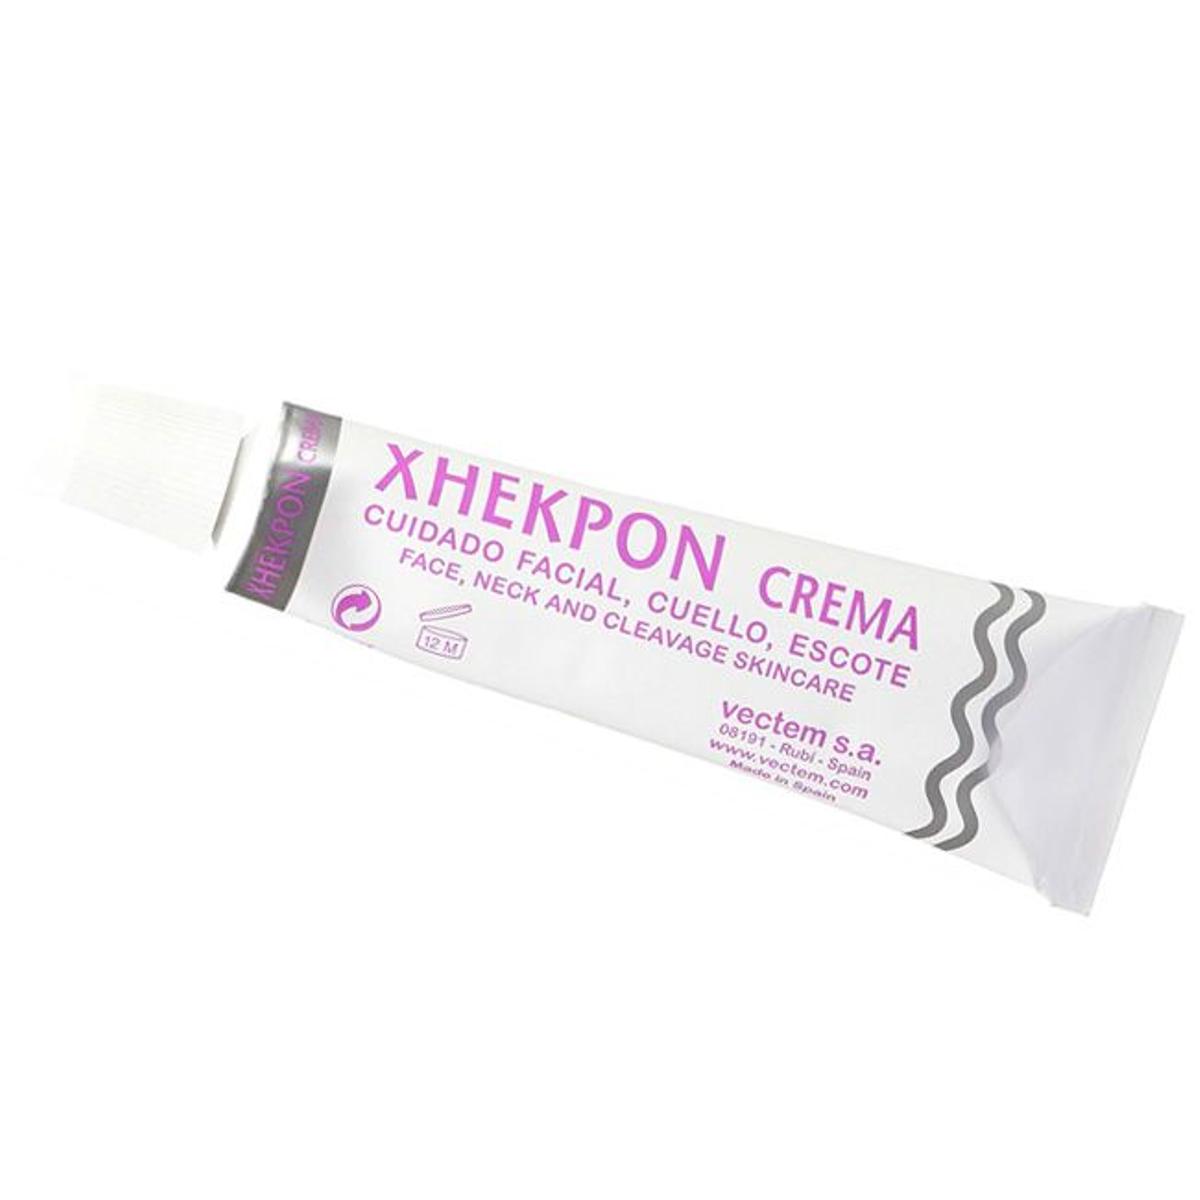 Xhekpon, la crema antiarrugas de farmacia que se vende en Amazon